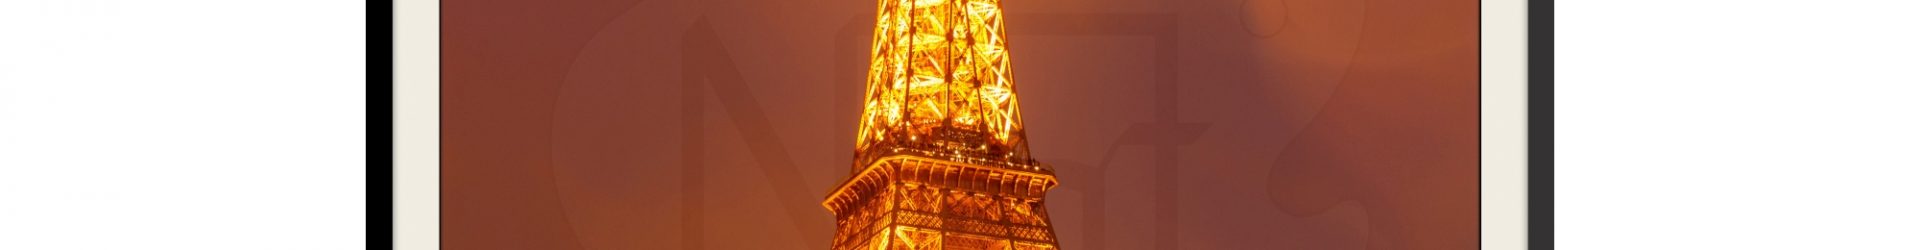 Turnul Eiffel peste Sena